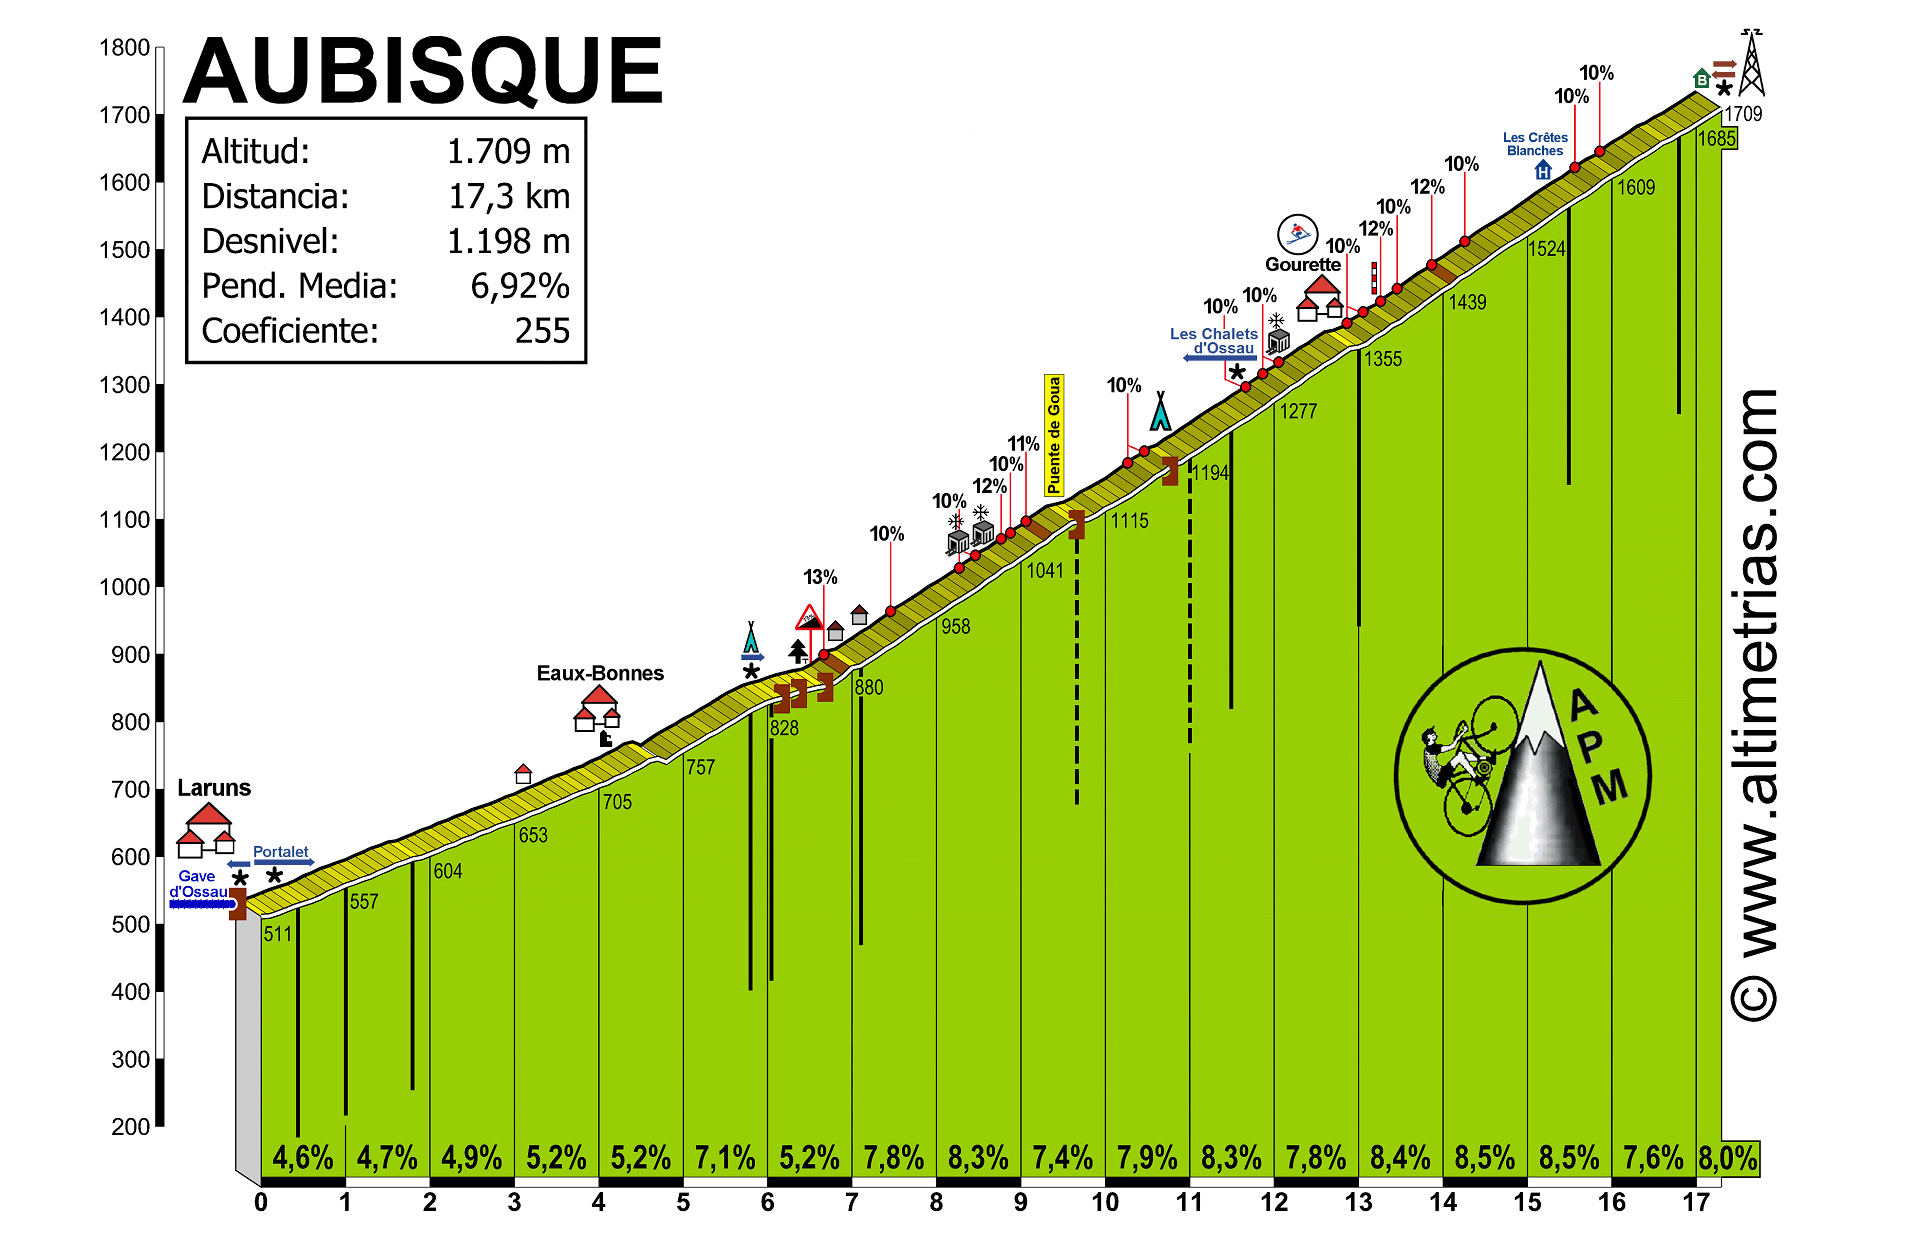 Concurso Tour de France 2022 Aubisque1